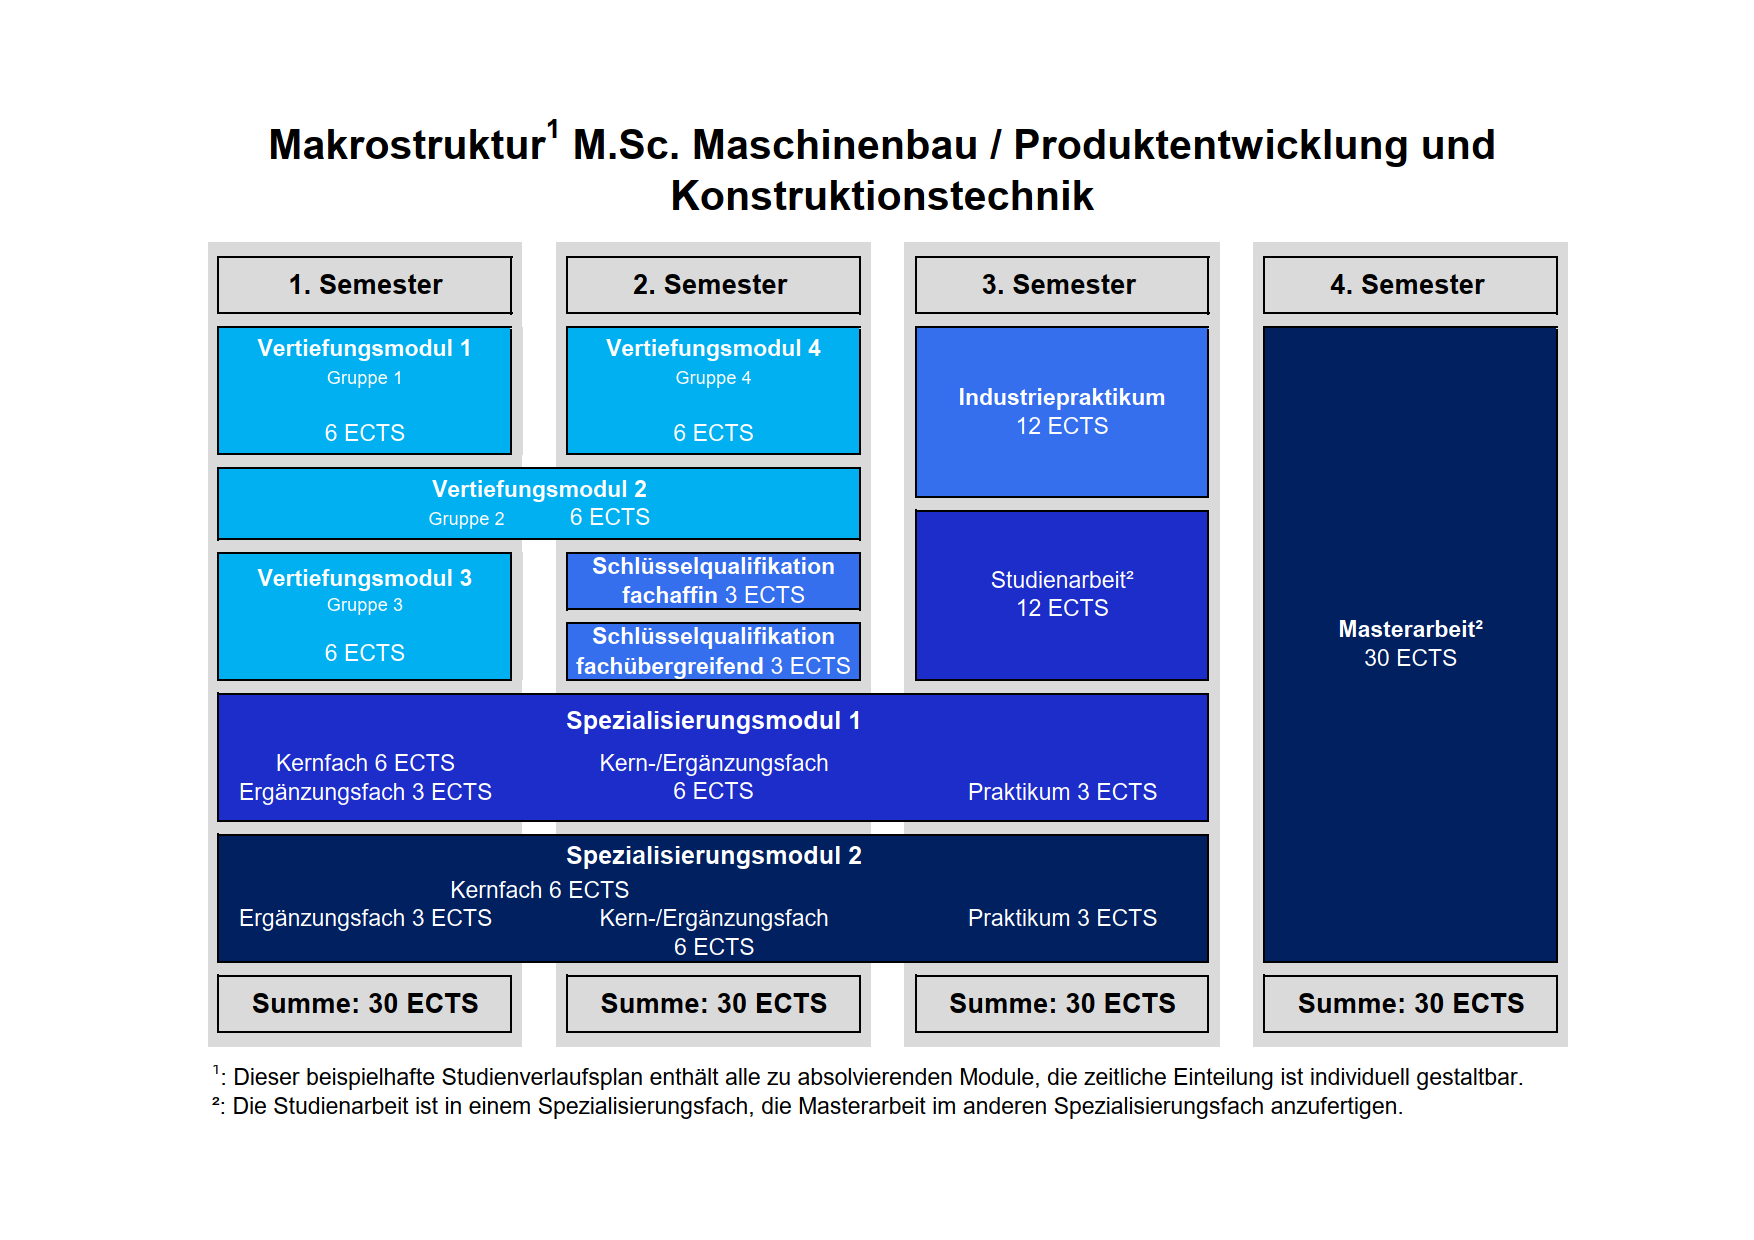 Makrostruktur des Studiengangs Maschinenbau / Produktentwicklung und Konstruktionstechnik